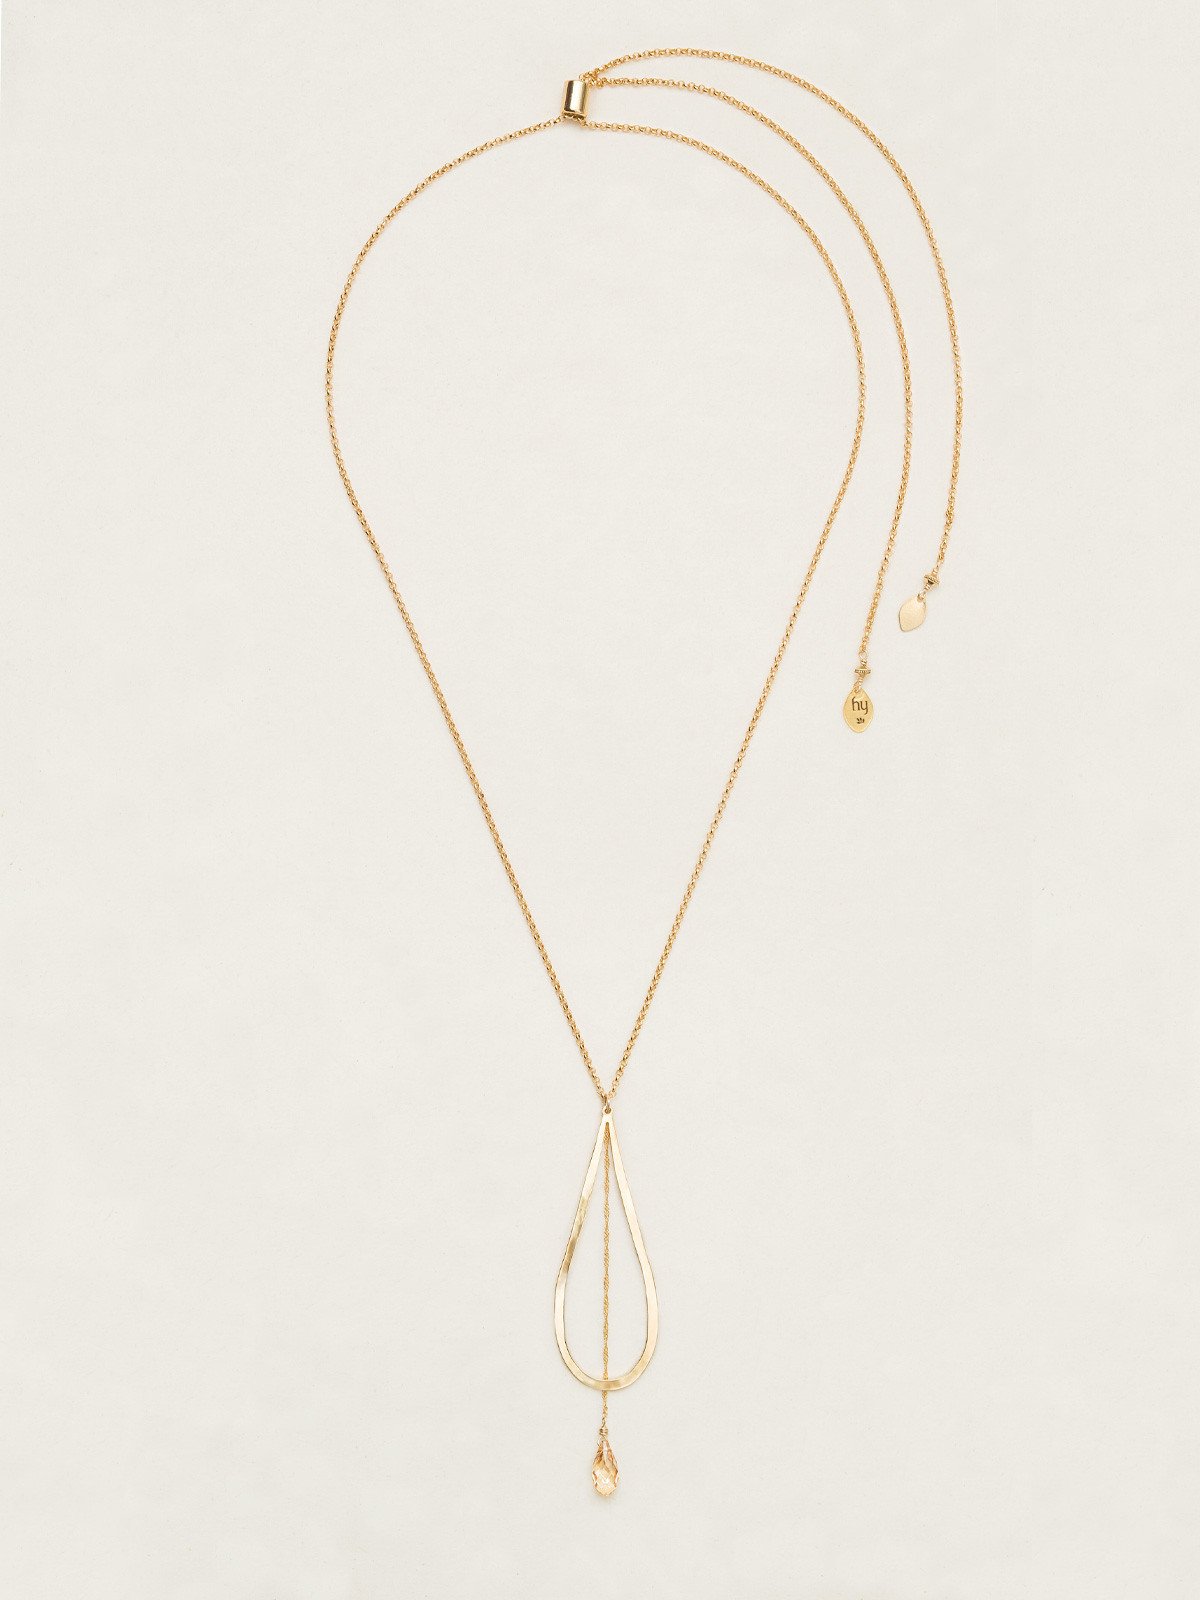 Holly Yashi Celestine Drop Necklace - Gold/Champagne    